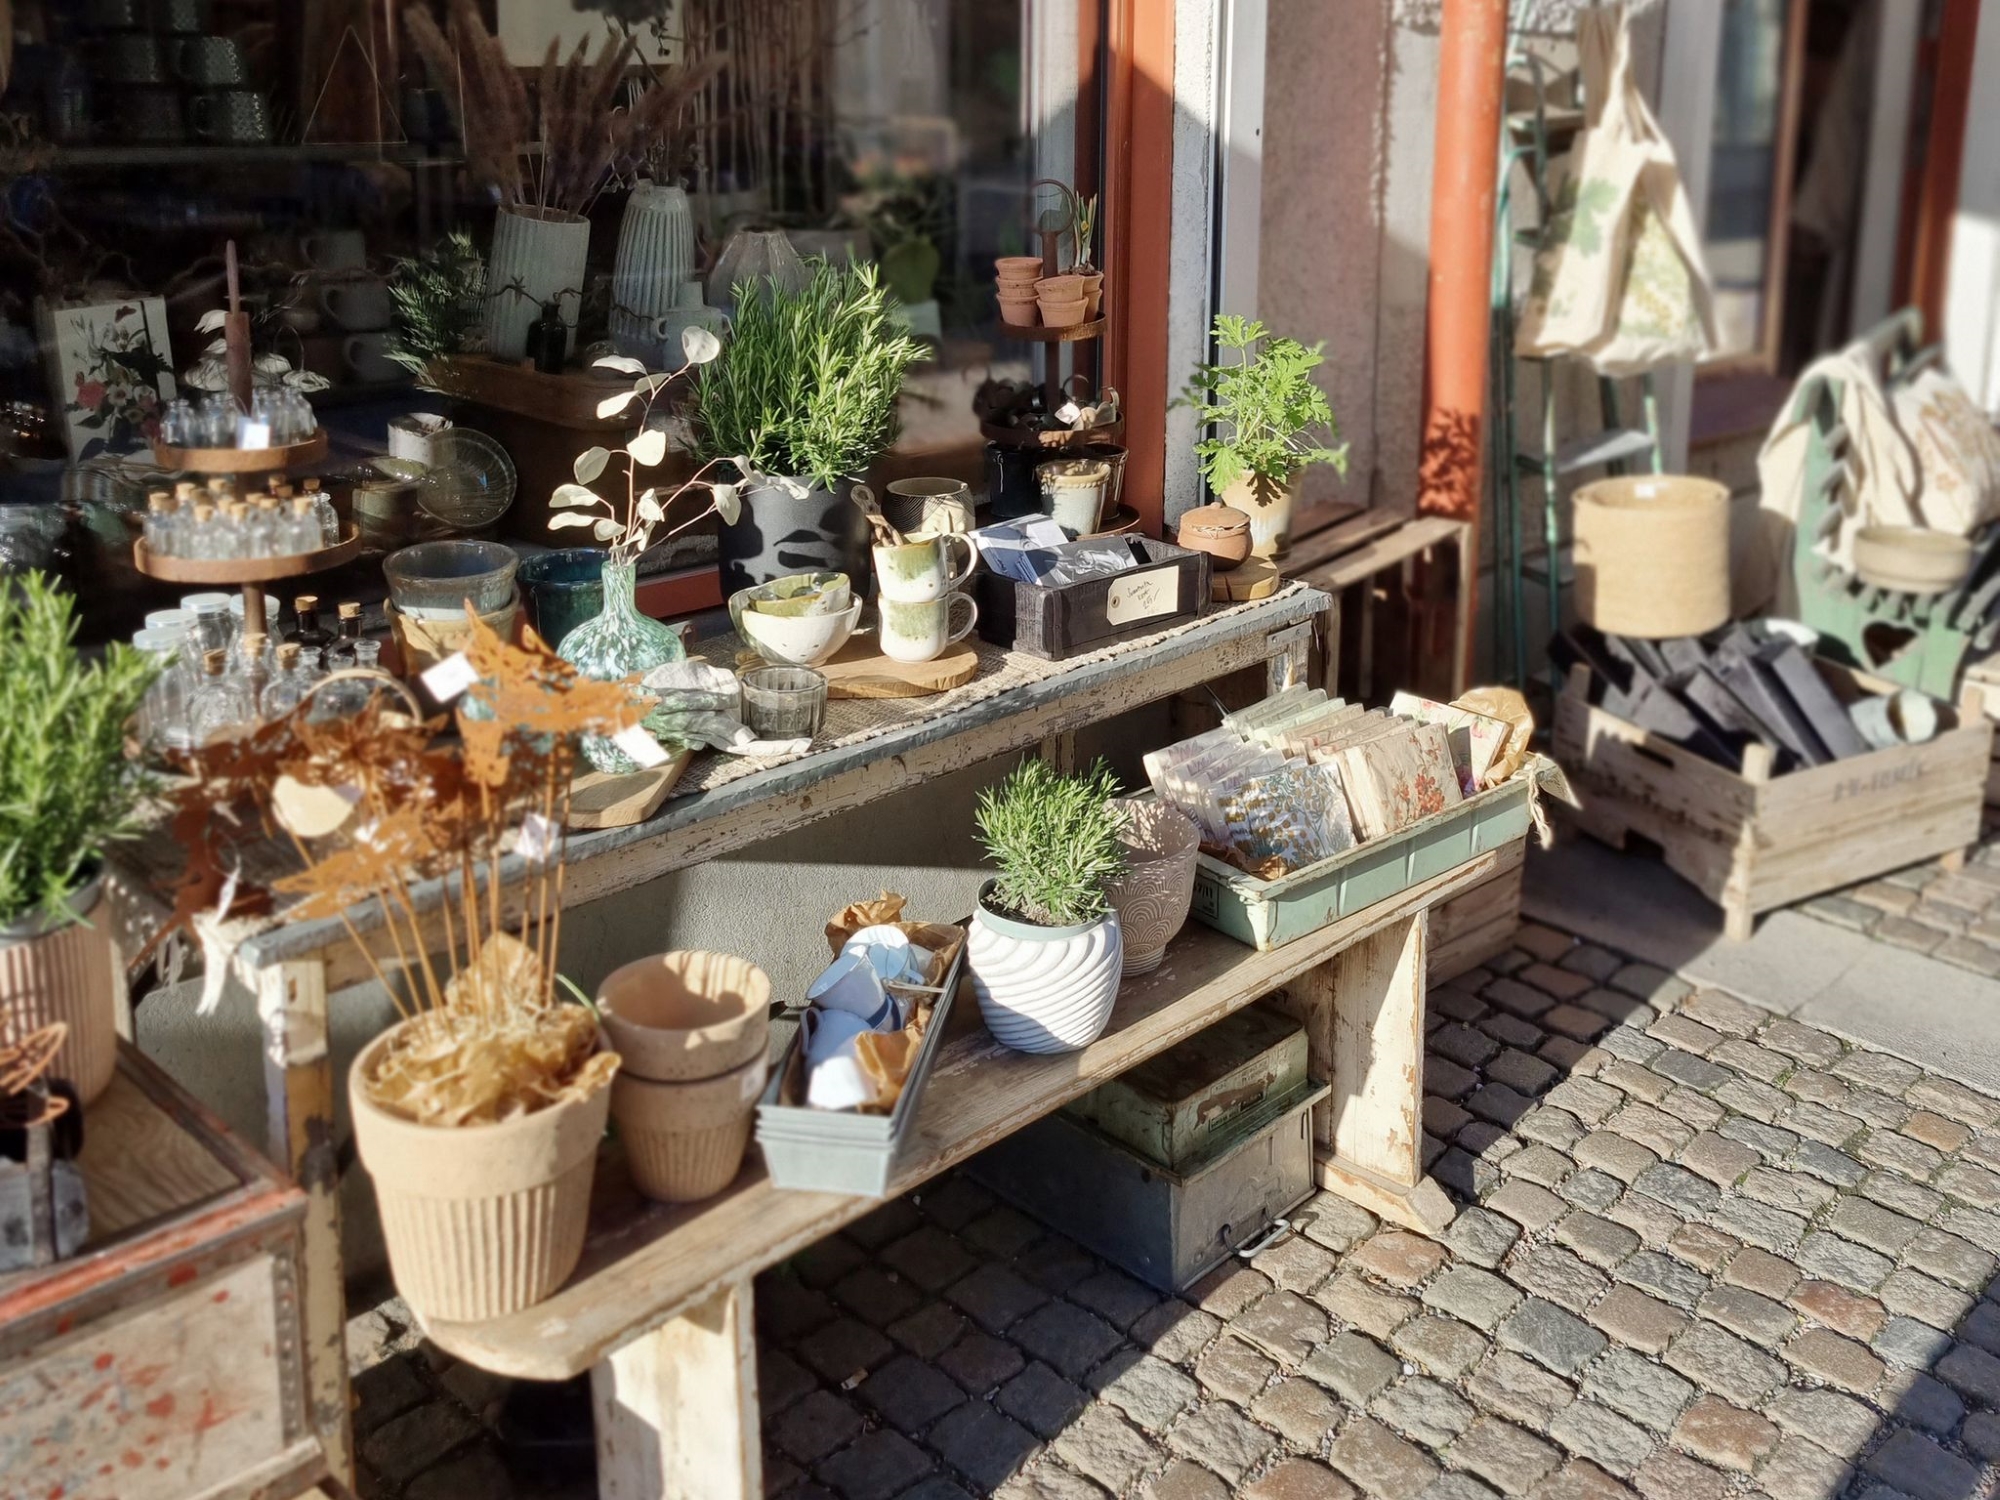 En butik utanför med olika vaser och växter, samt små dekorationsbitar som koppar, små glasburkar och servetter.